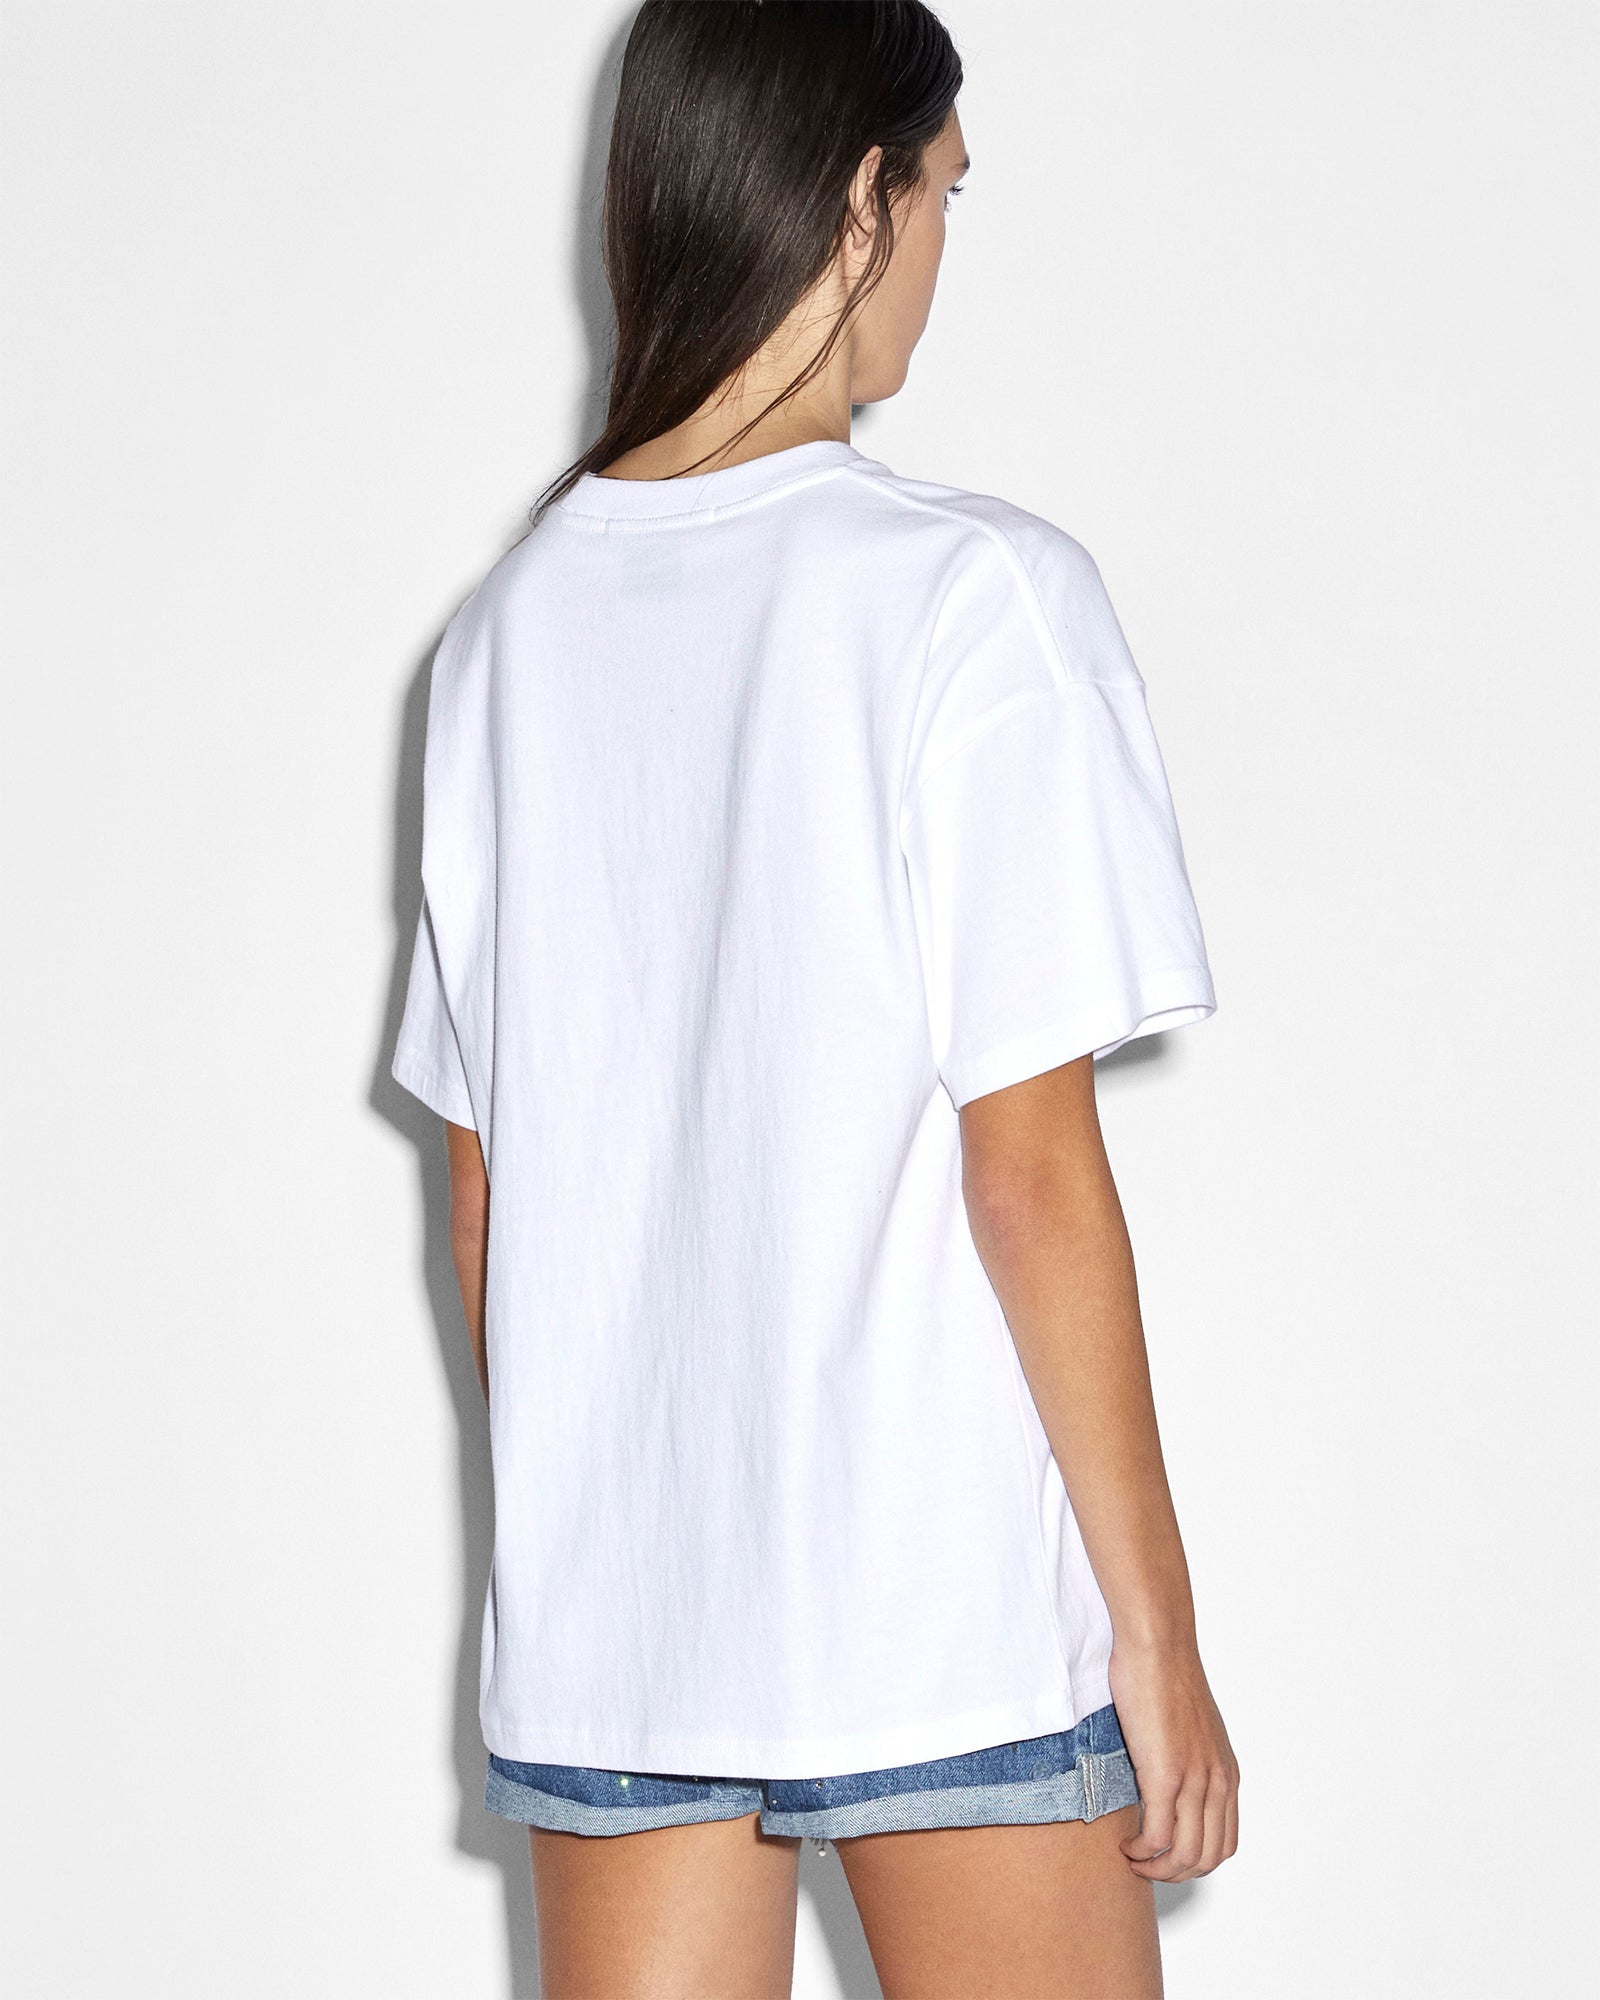 Sott Static Oh G - Ksubi White | T-shirt ++ Sleeve Short